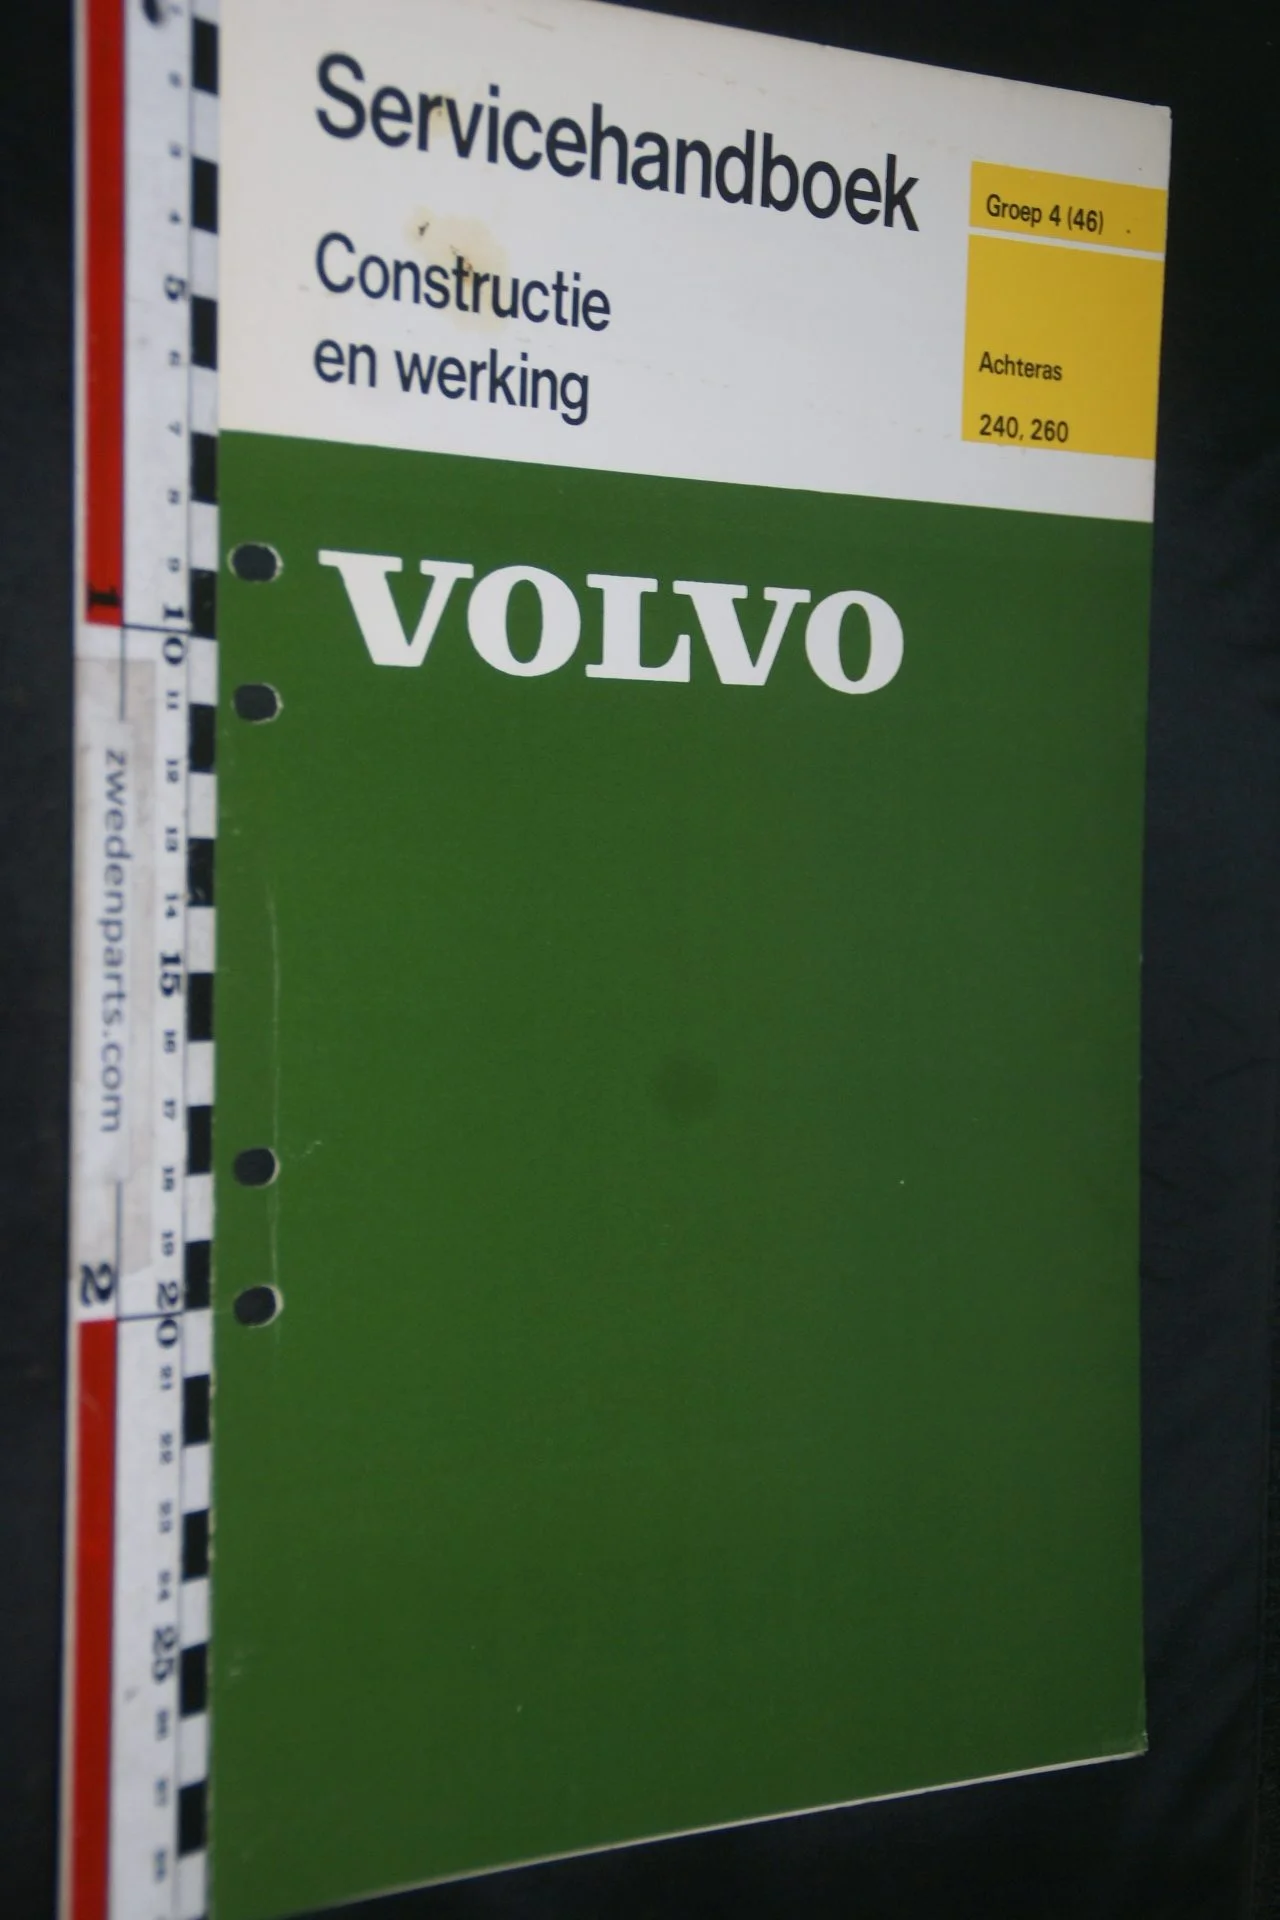 DSC06740 1976 origineel Volvo 240, 260 servicehandboek 4 (46) achteras 1 van 750 TP 11567-1